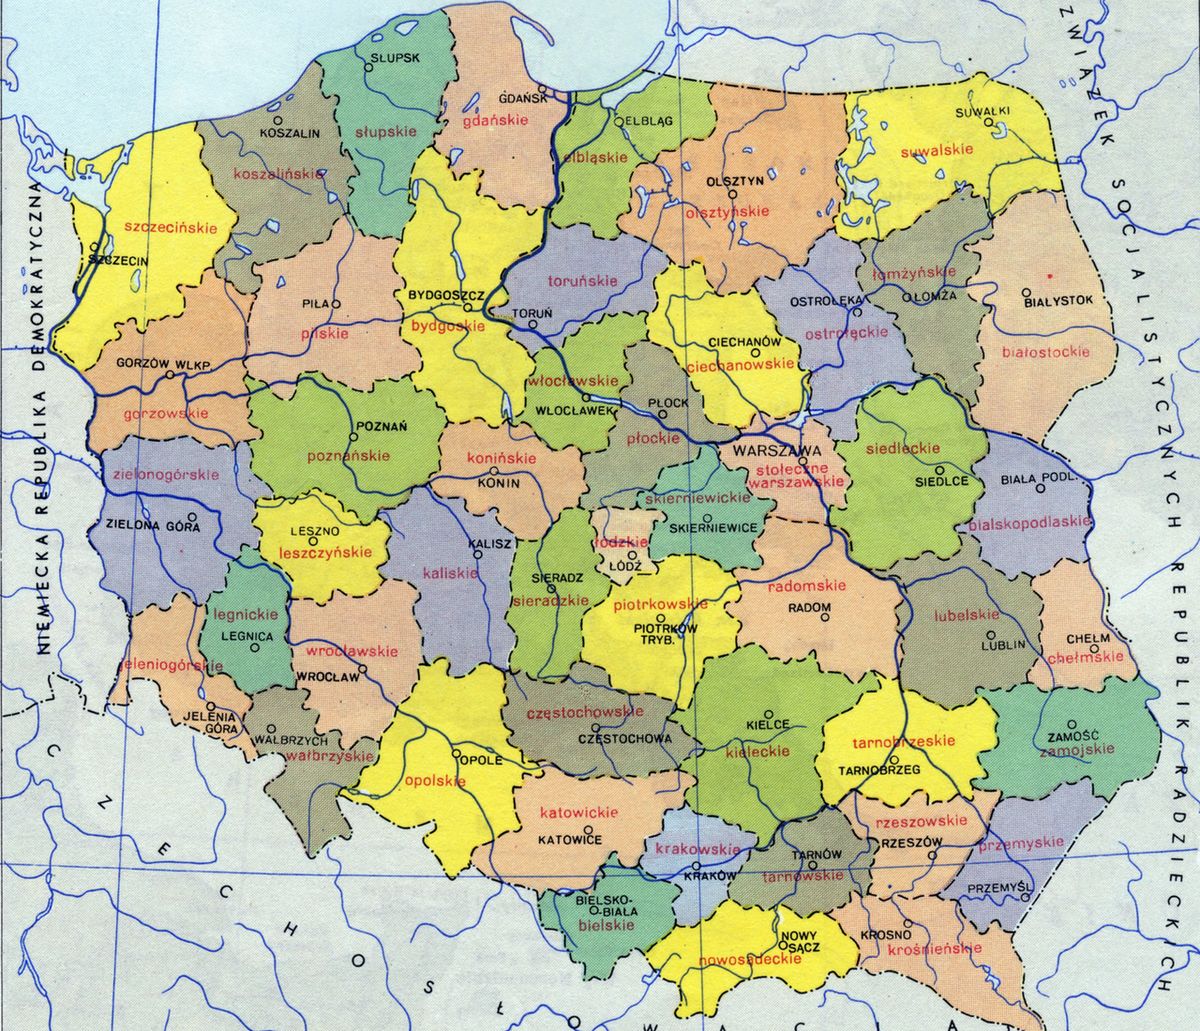 Mapa Polski Miasta